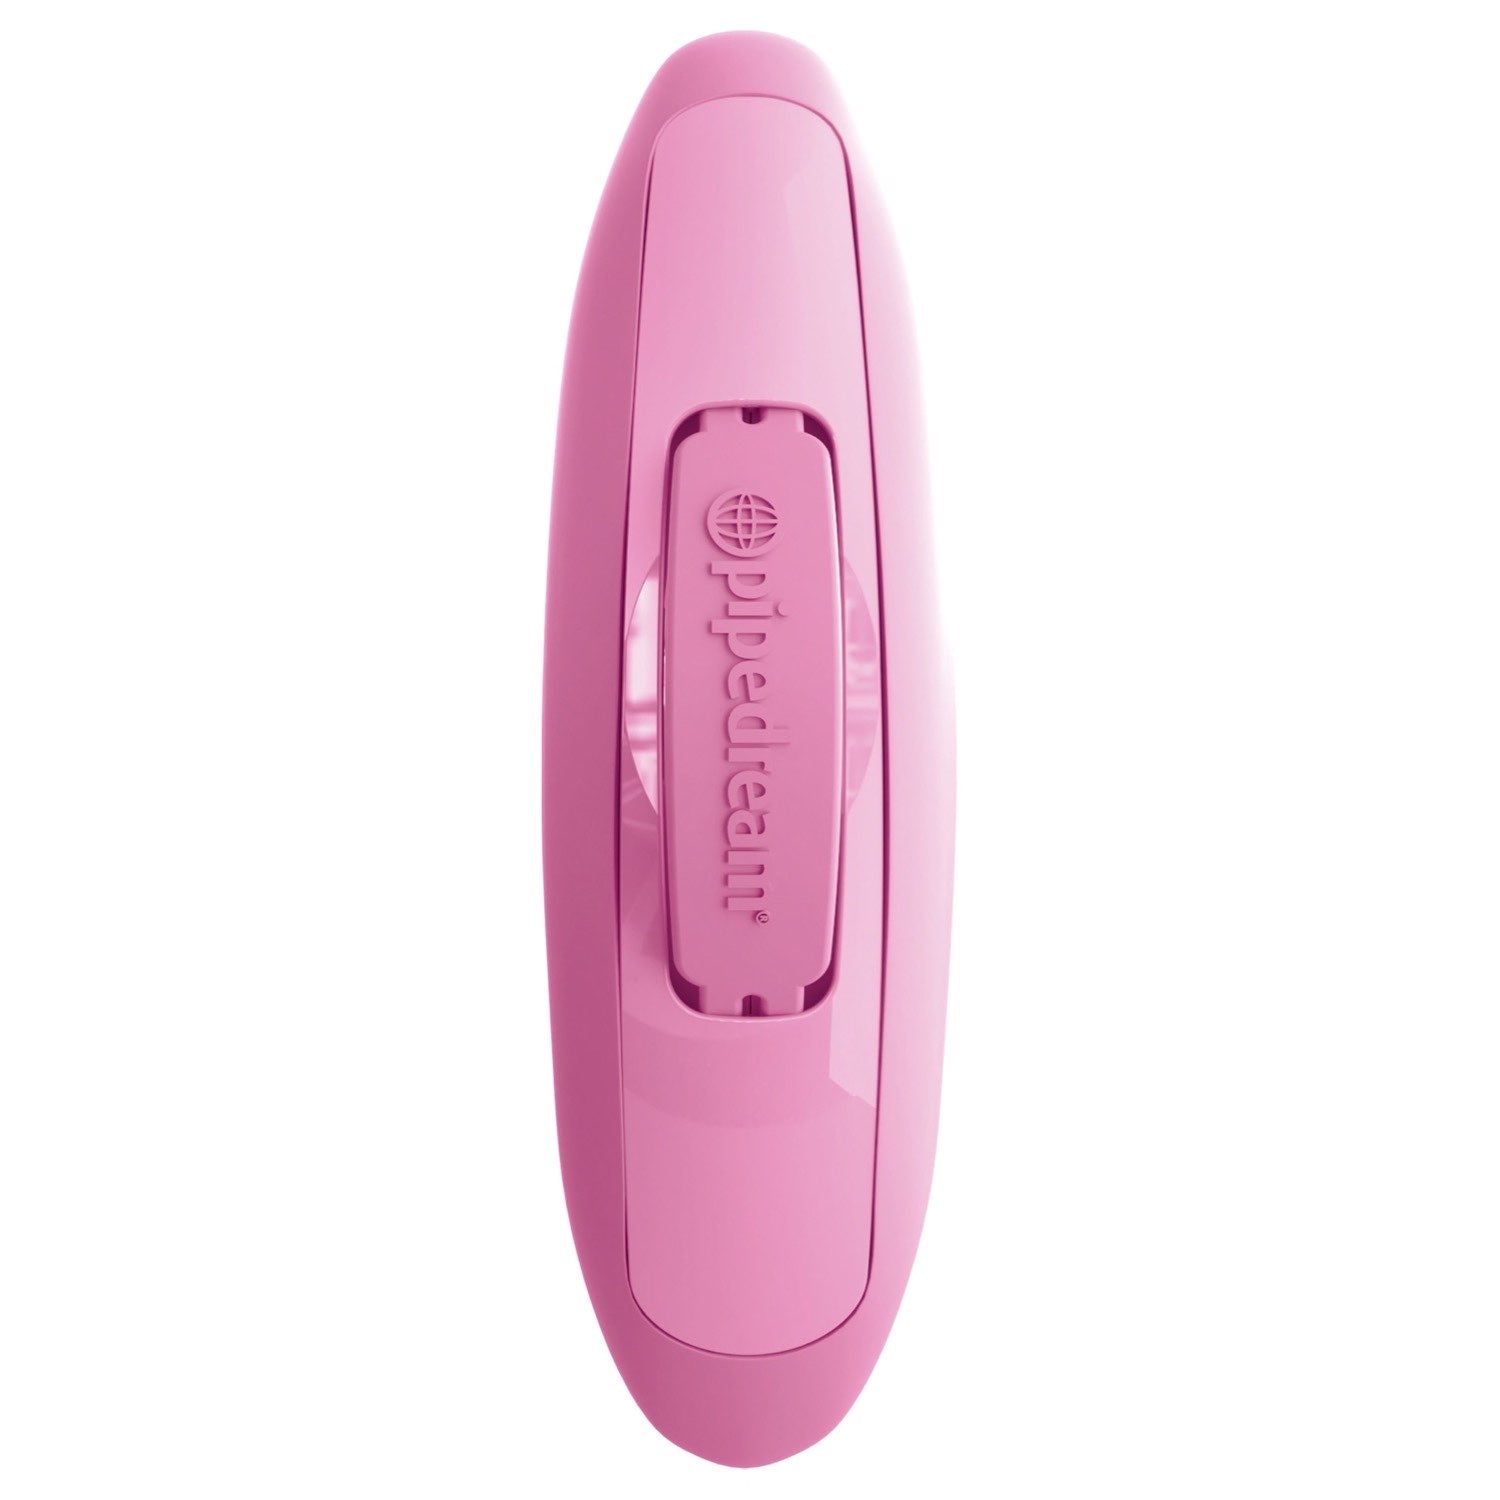 3人 Rock N Grind - 粉色 USB 可充电刺激器，带无线遥控器 by Pipedream